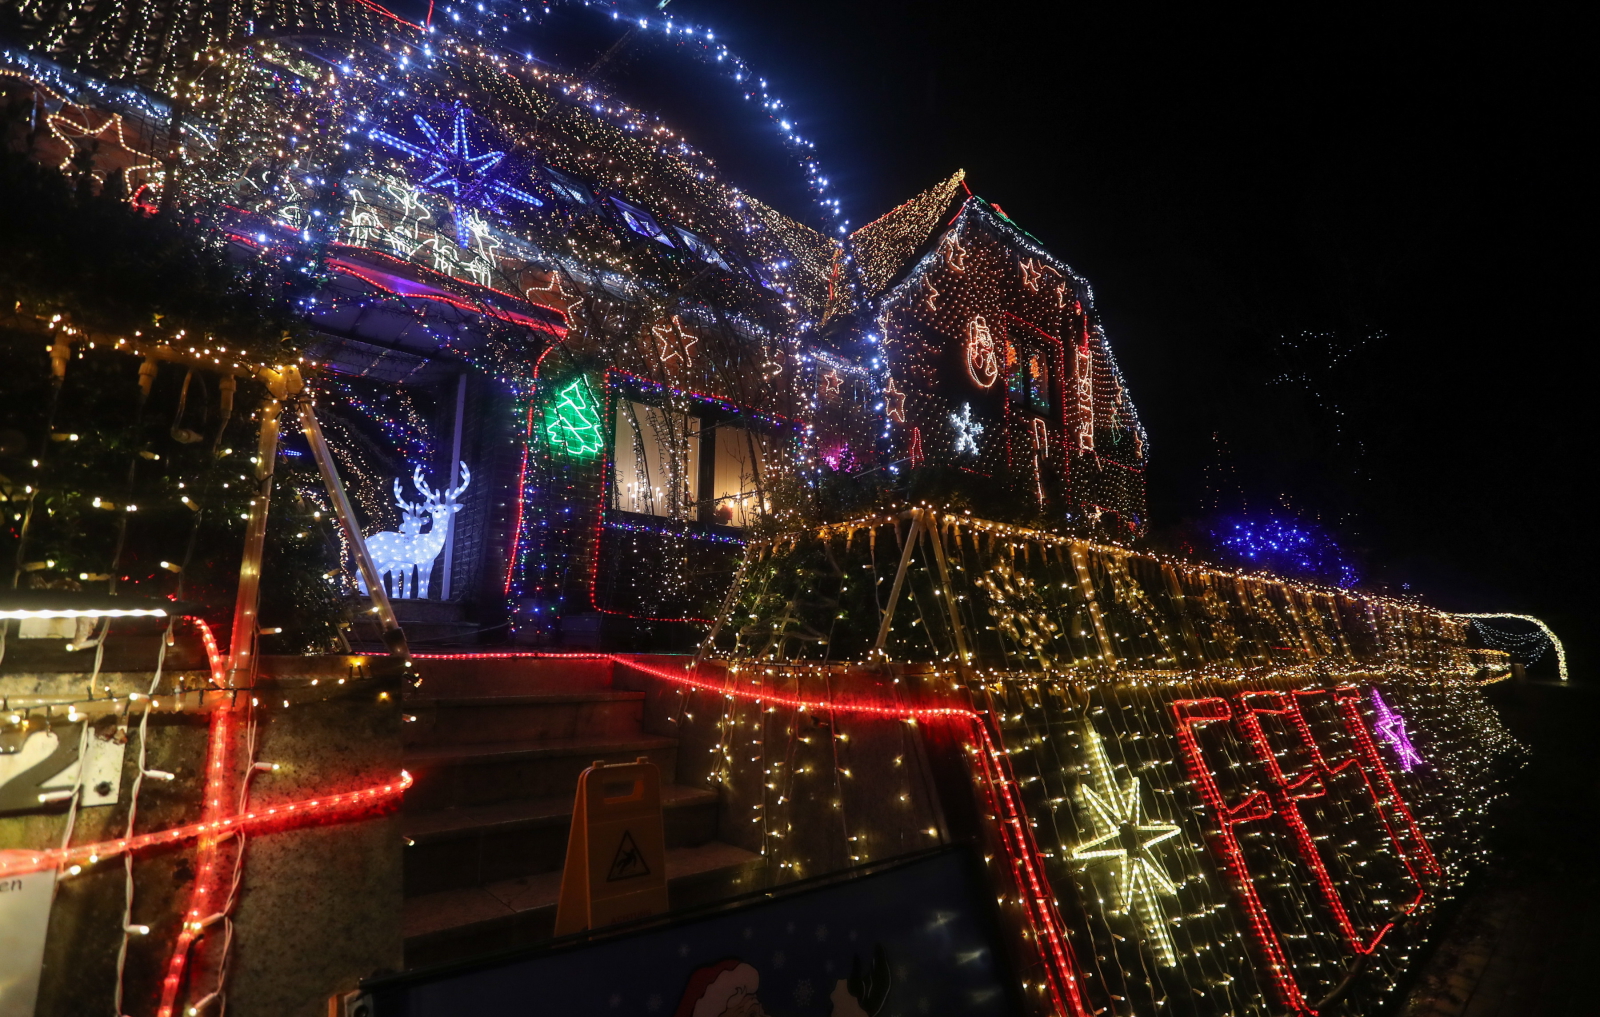 Iluminacje świąteczne rodziny Vogt z Calle, Niemcy Fot. PAP/EPA/FOCKE STRANGMANN